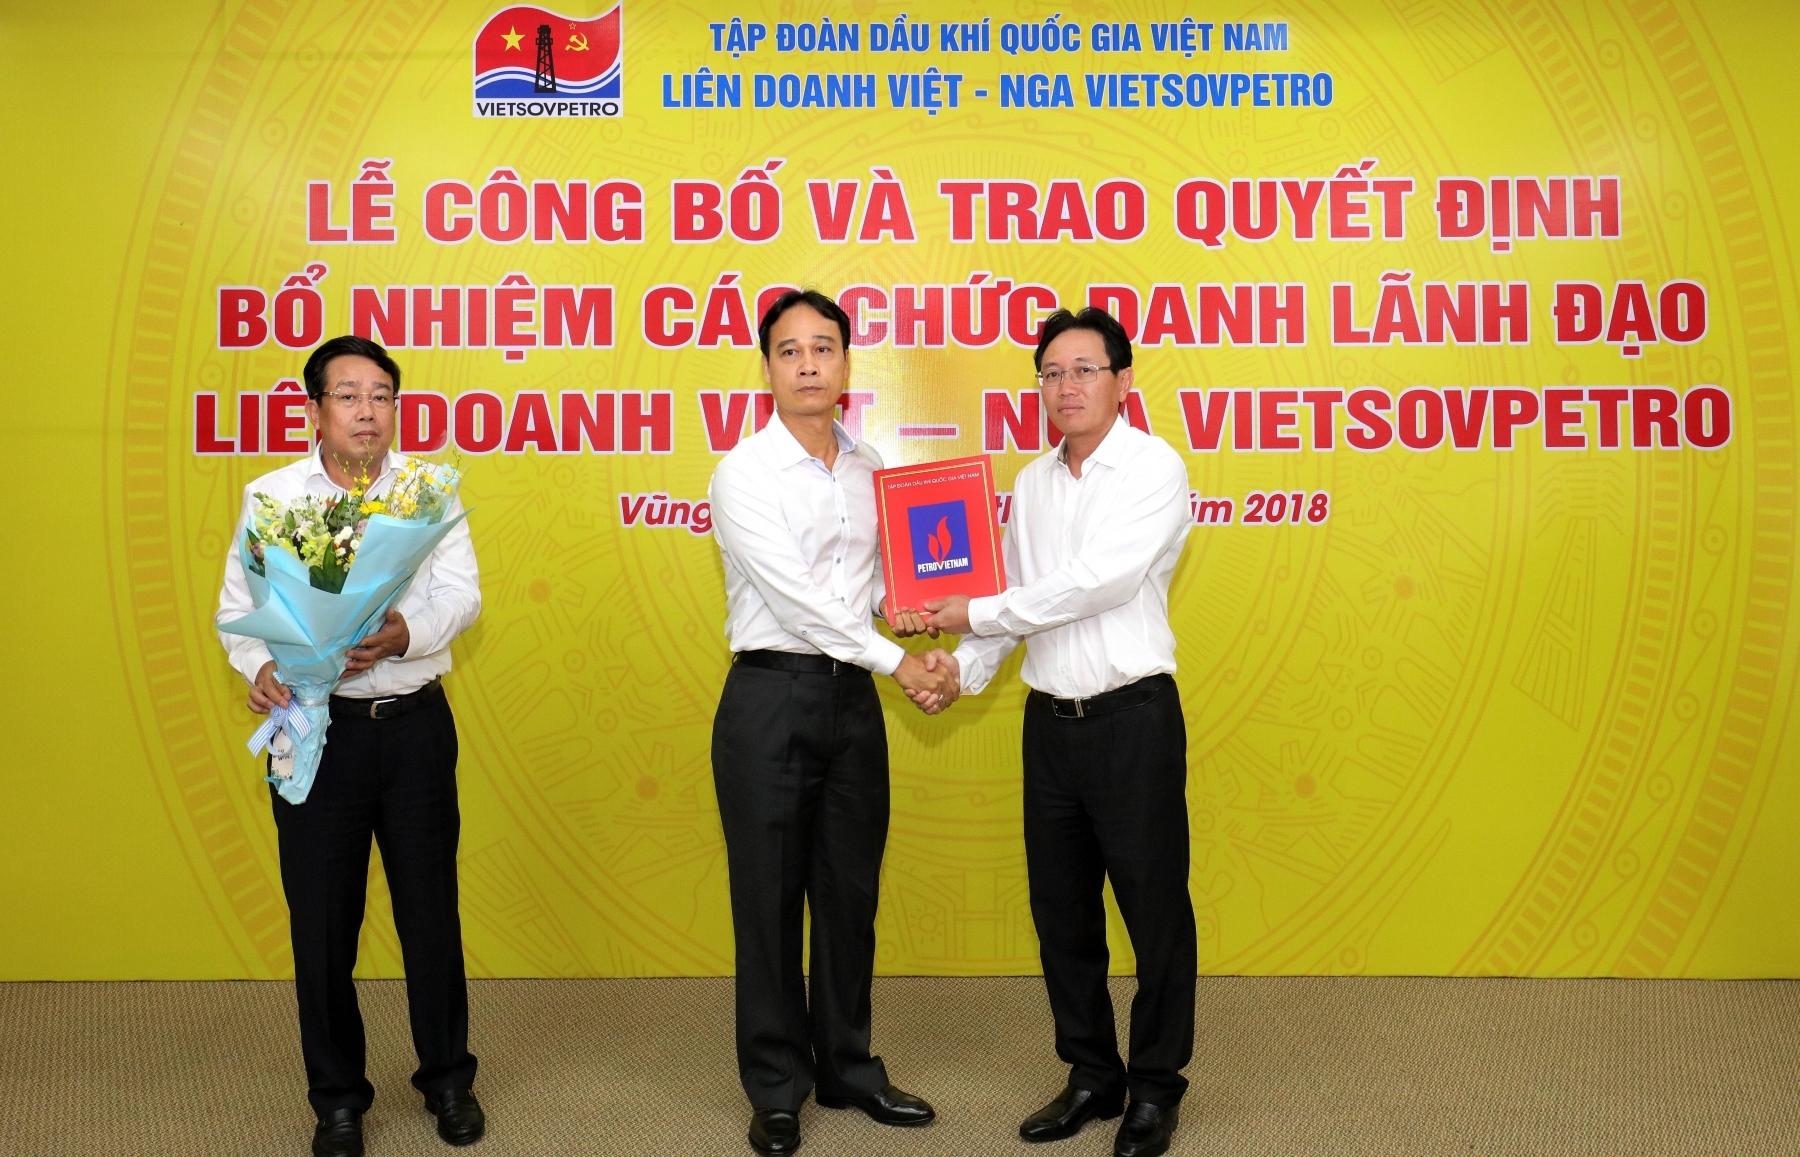 Công bố quyết định bổ nhiệm các chức danh lãnh đạo  Liên doanh Việt - Nga Vietsovpetro